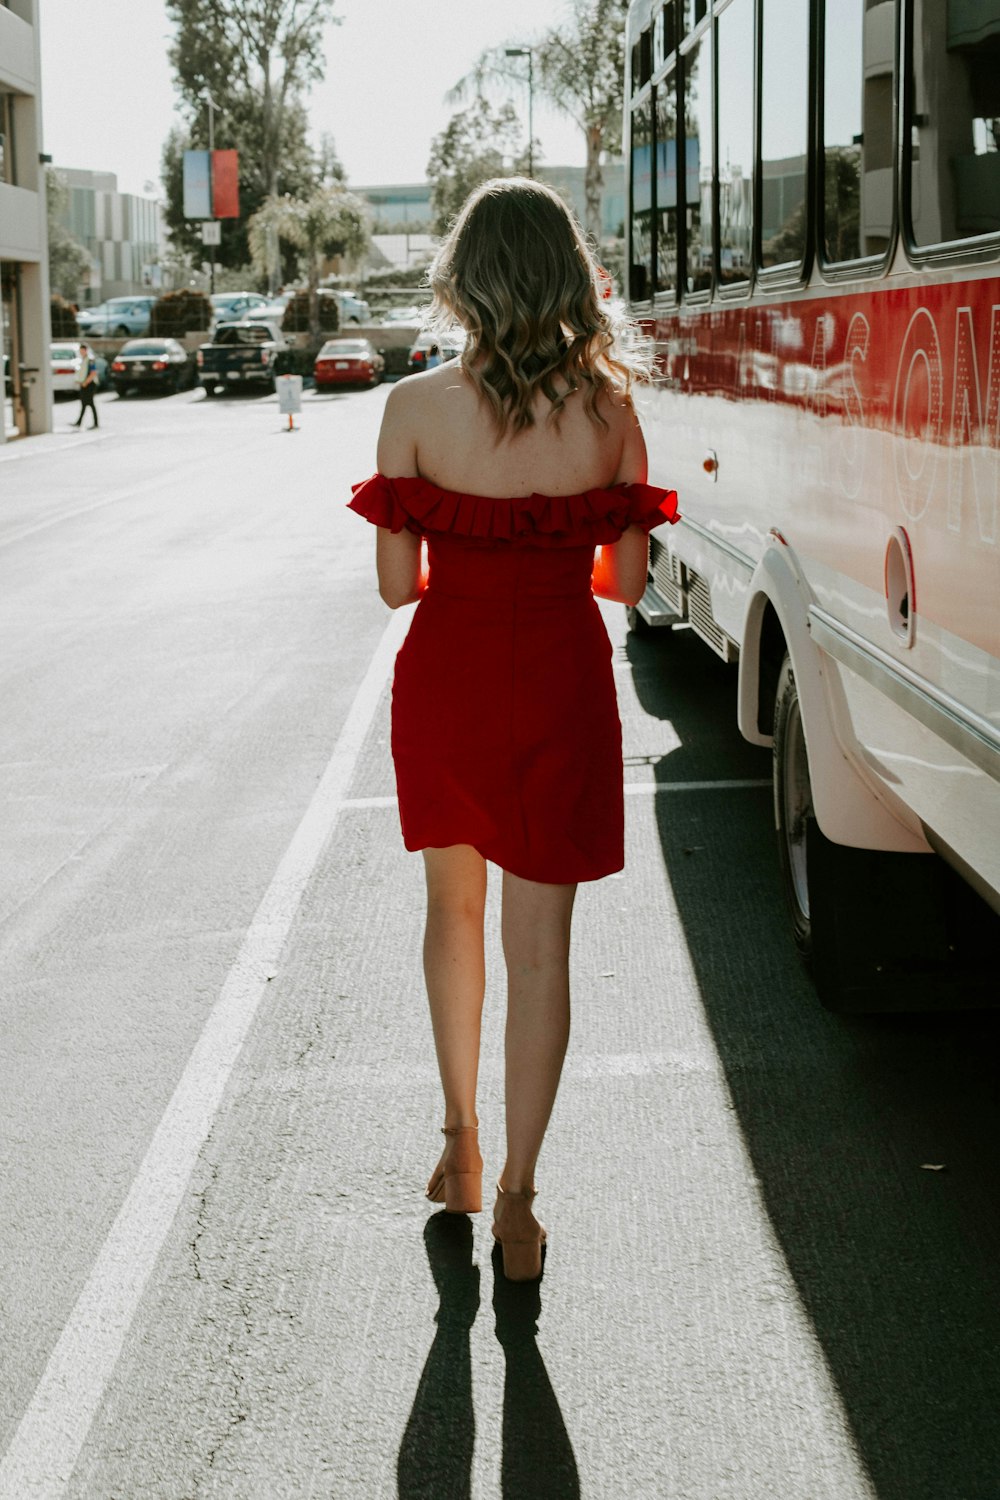 Une femme en robe rouge marche dans la rue